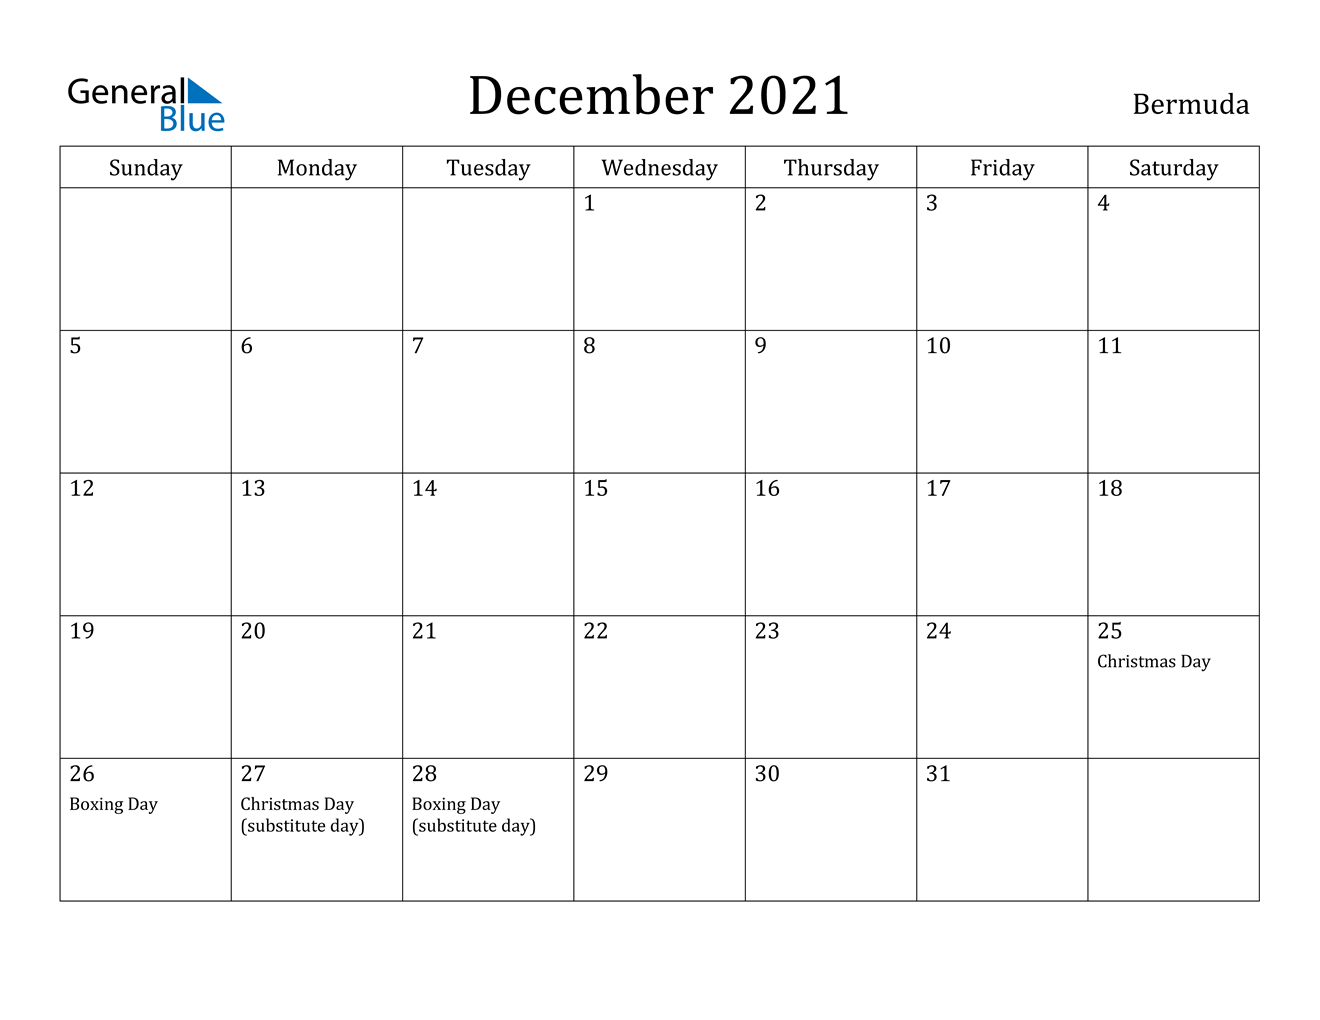 December 2021 Calendar - Bermuda